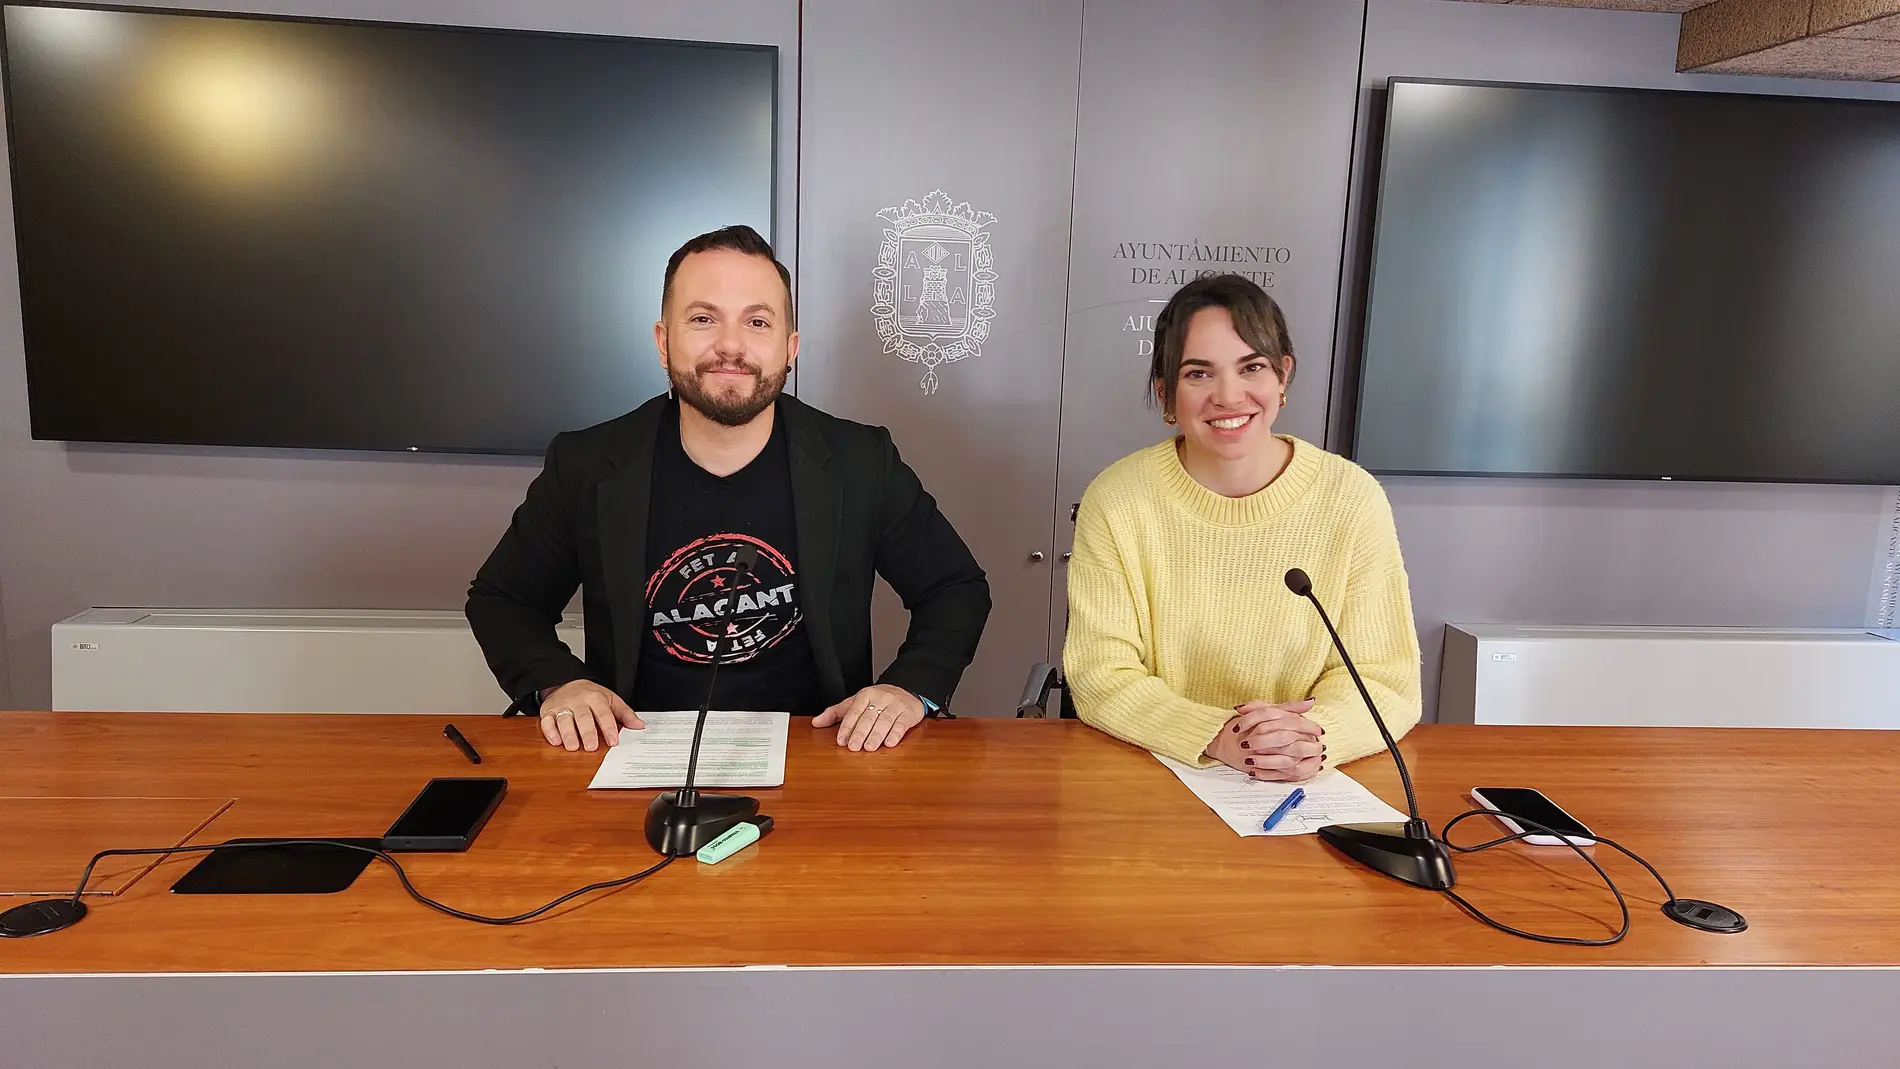 Los concejales de Compromís en el ayuntamiento de Alicante Rafa Mas y Sara Llobel